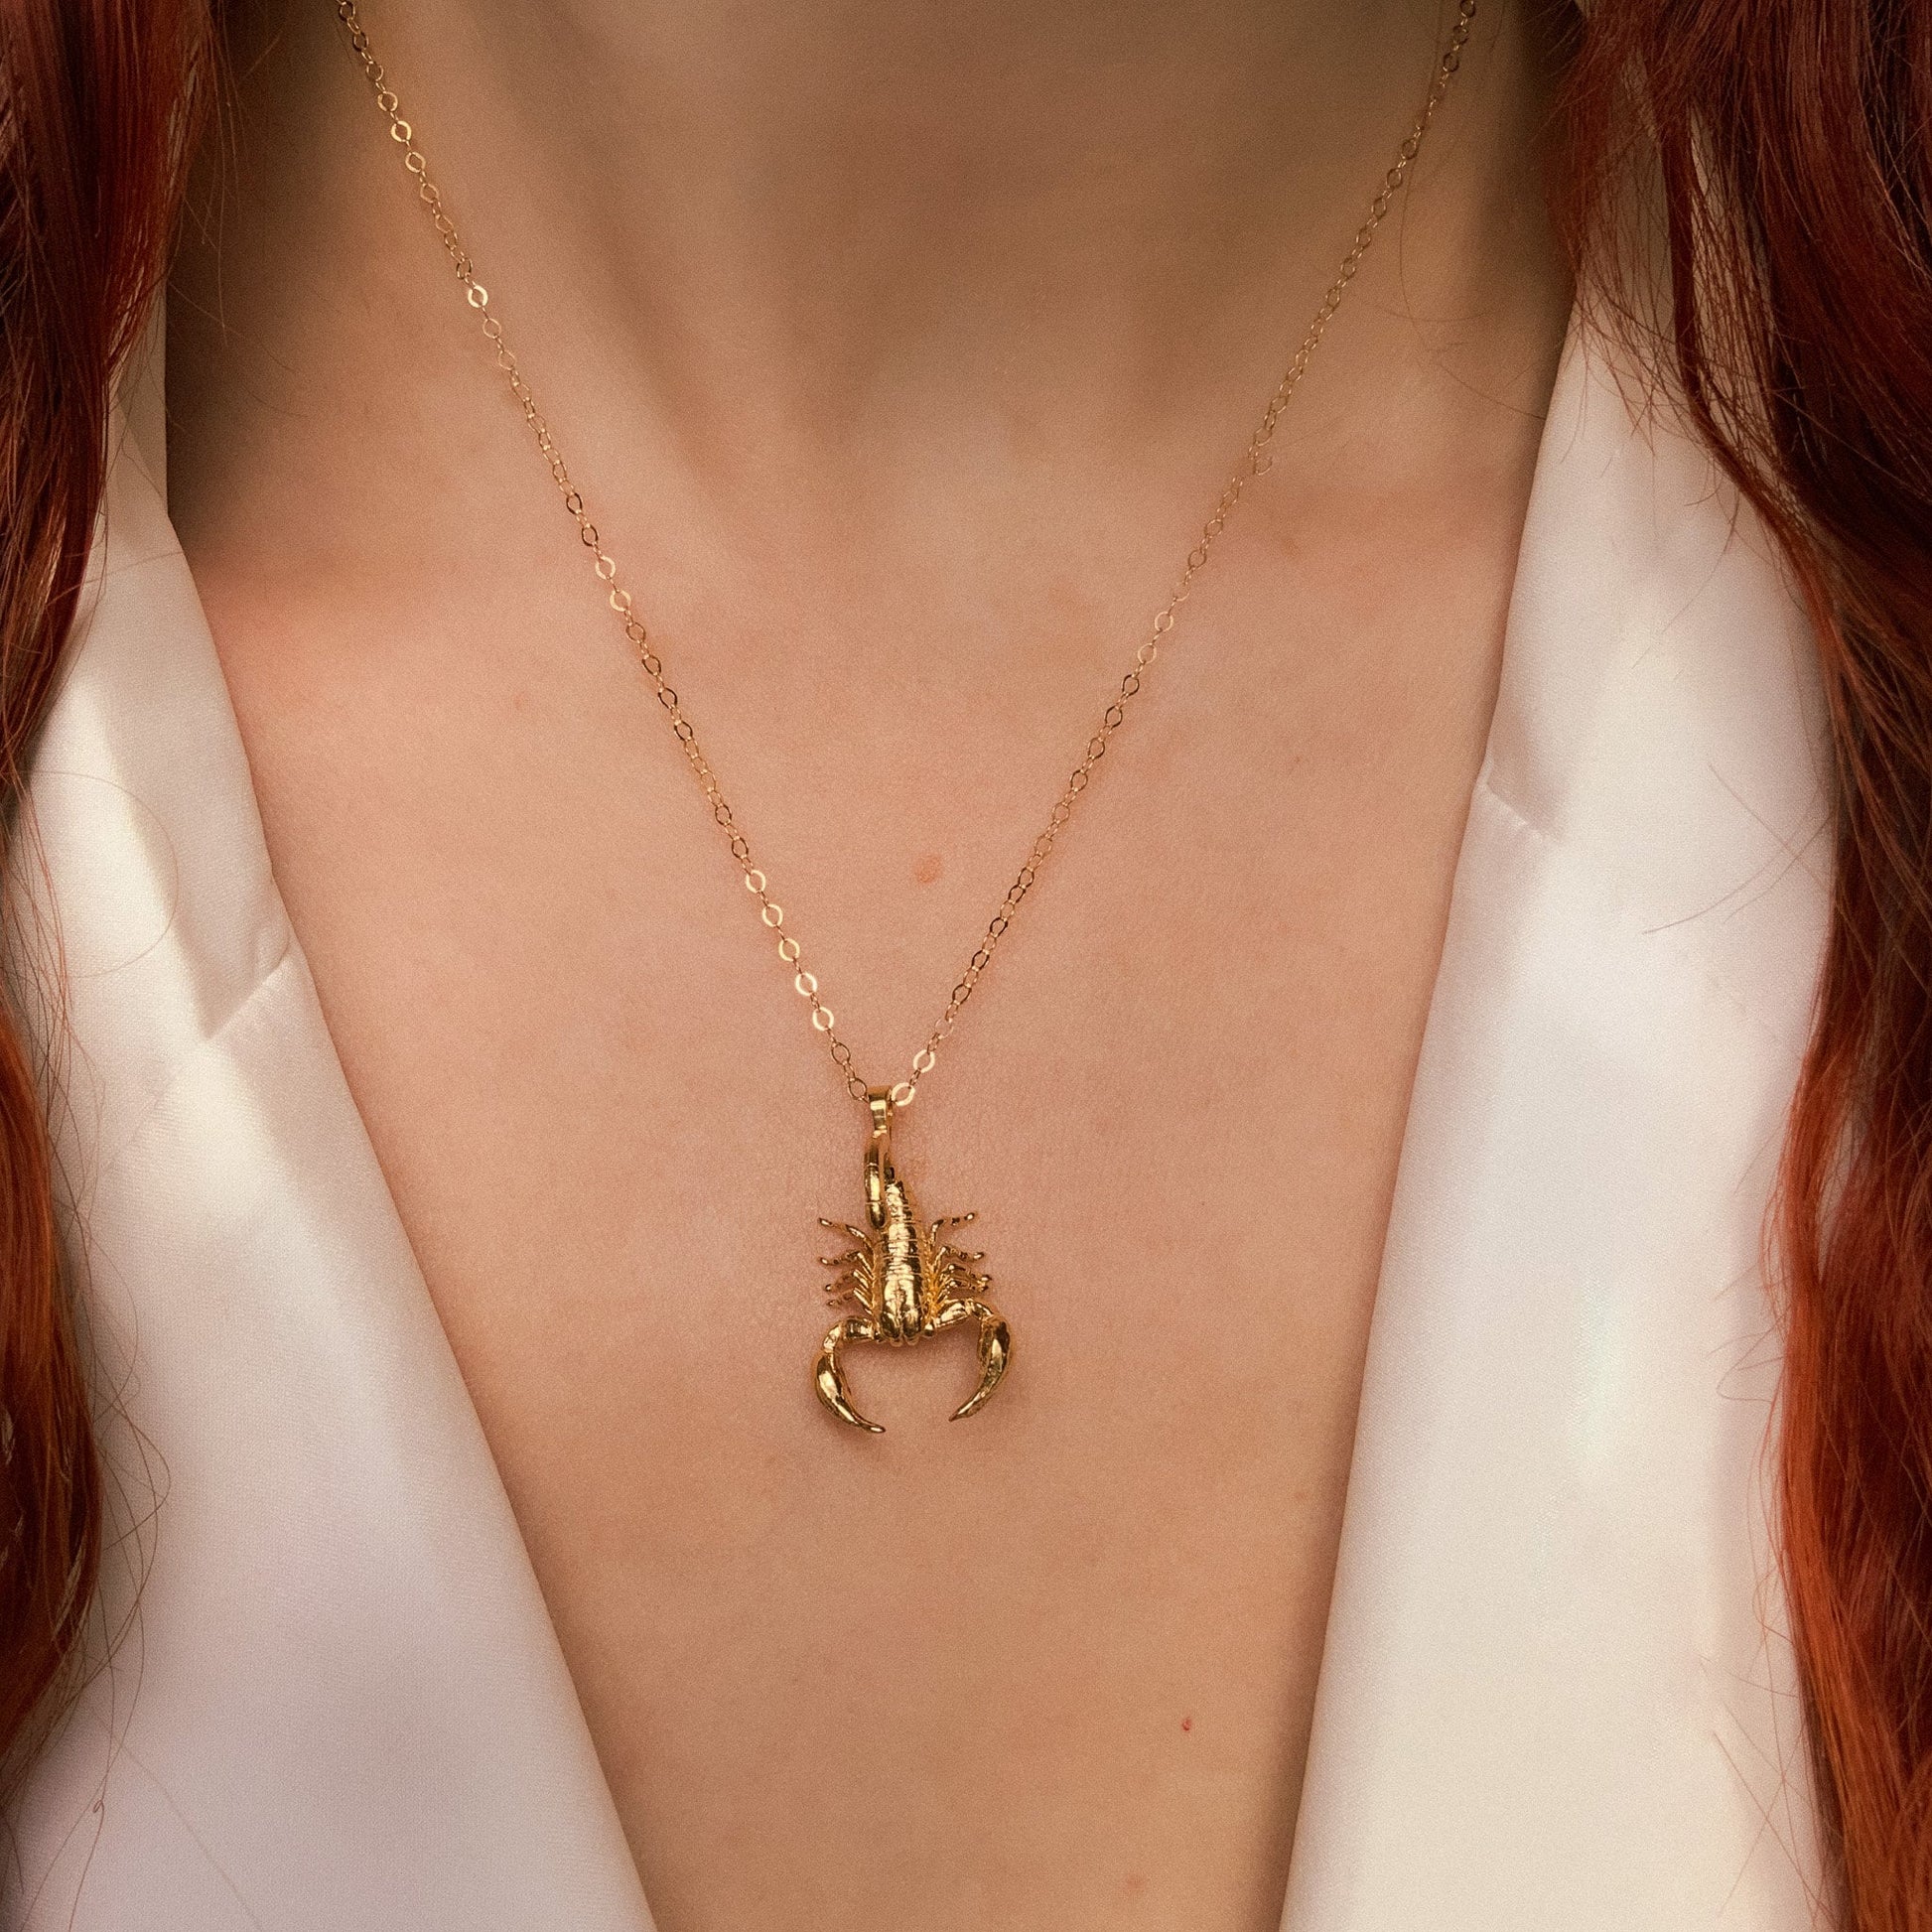 Amelia – Necklace Ray Jewelry Scorpion